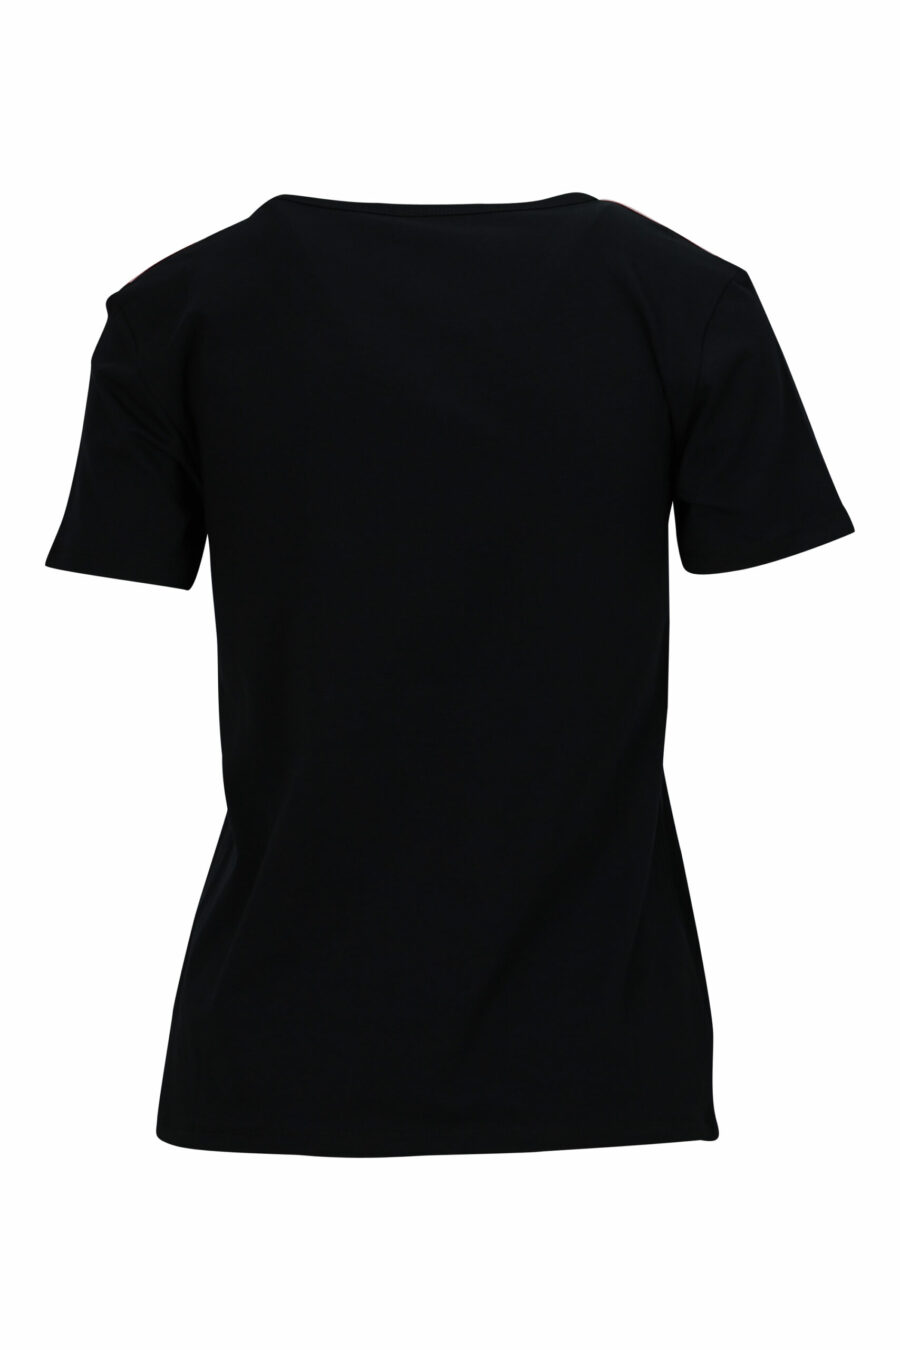 Schwarzes T-Shirt mit monochromem Logo auf den Schultern - 667113696690 1 skaliert